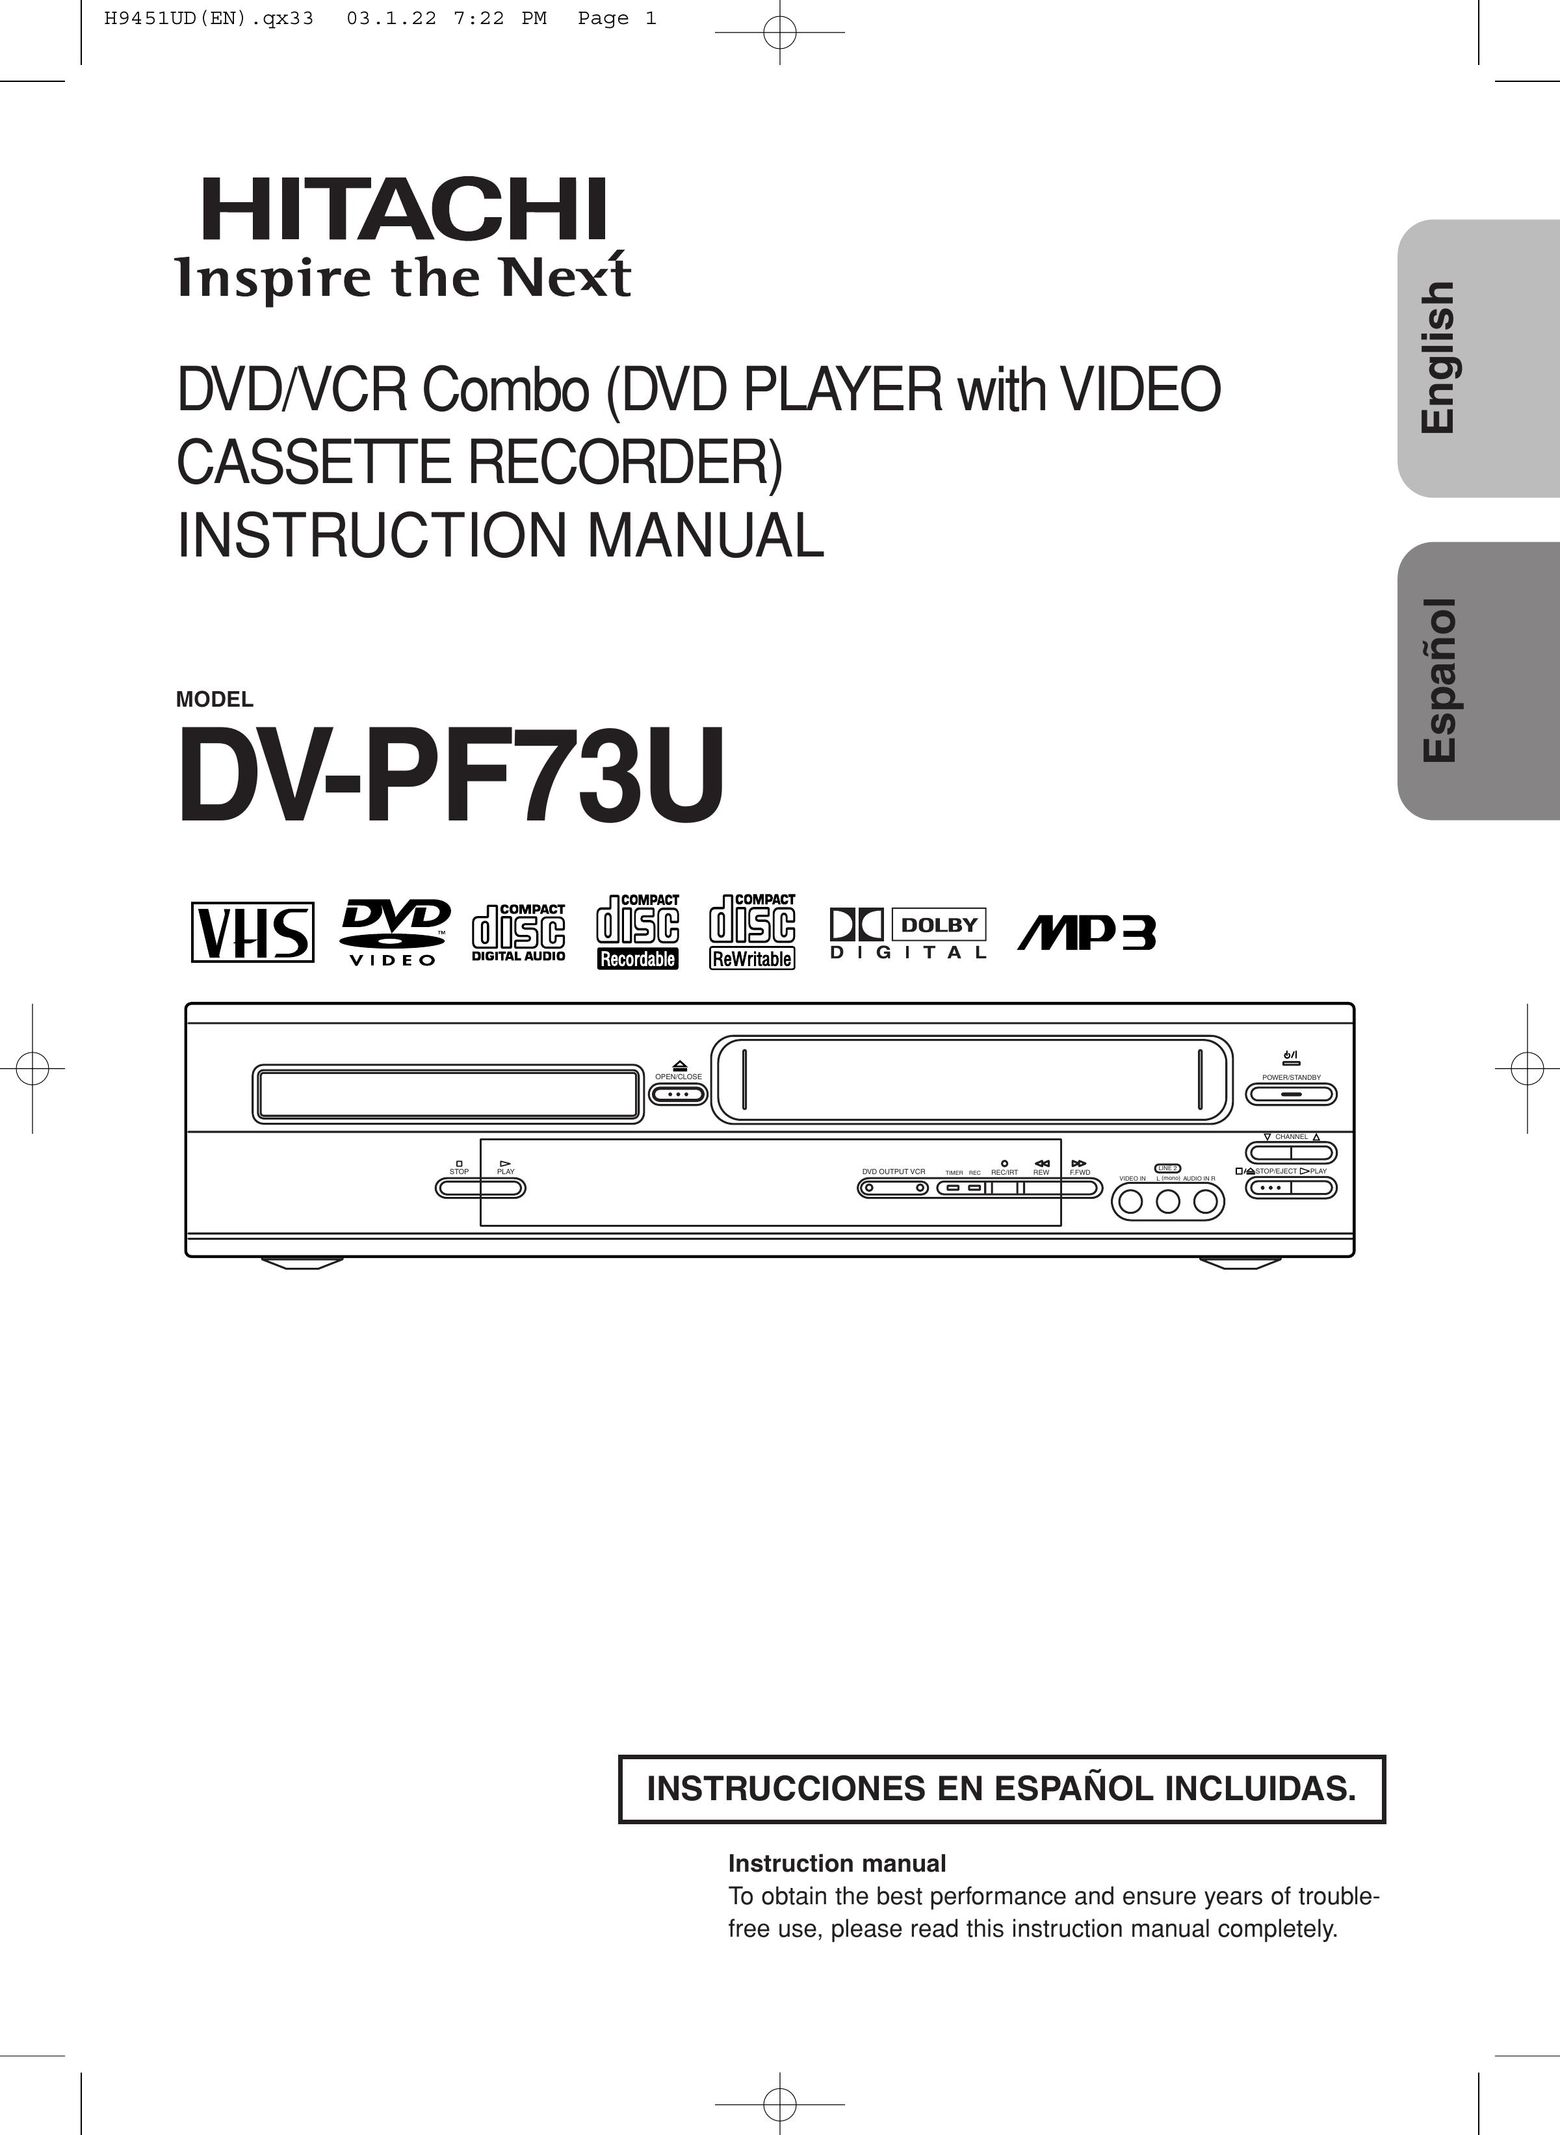 Hitachi DVPF73U DVD VCR Combo User Manual